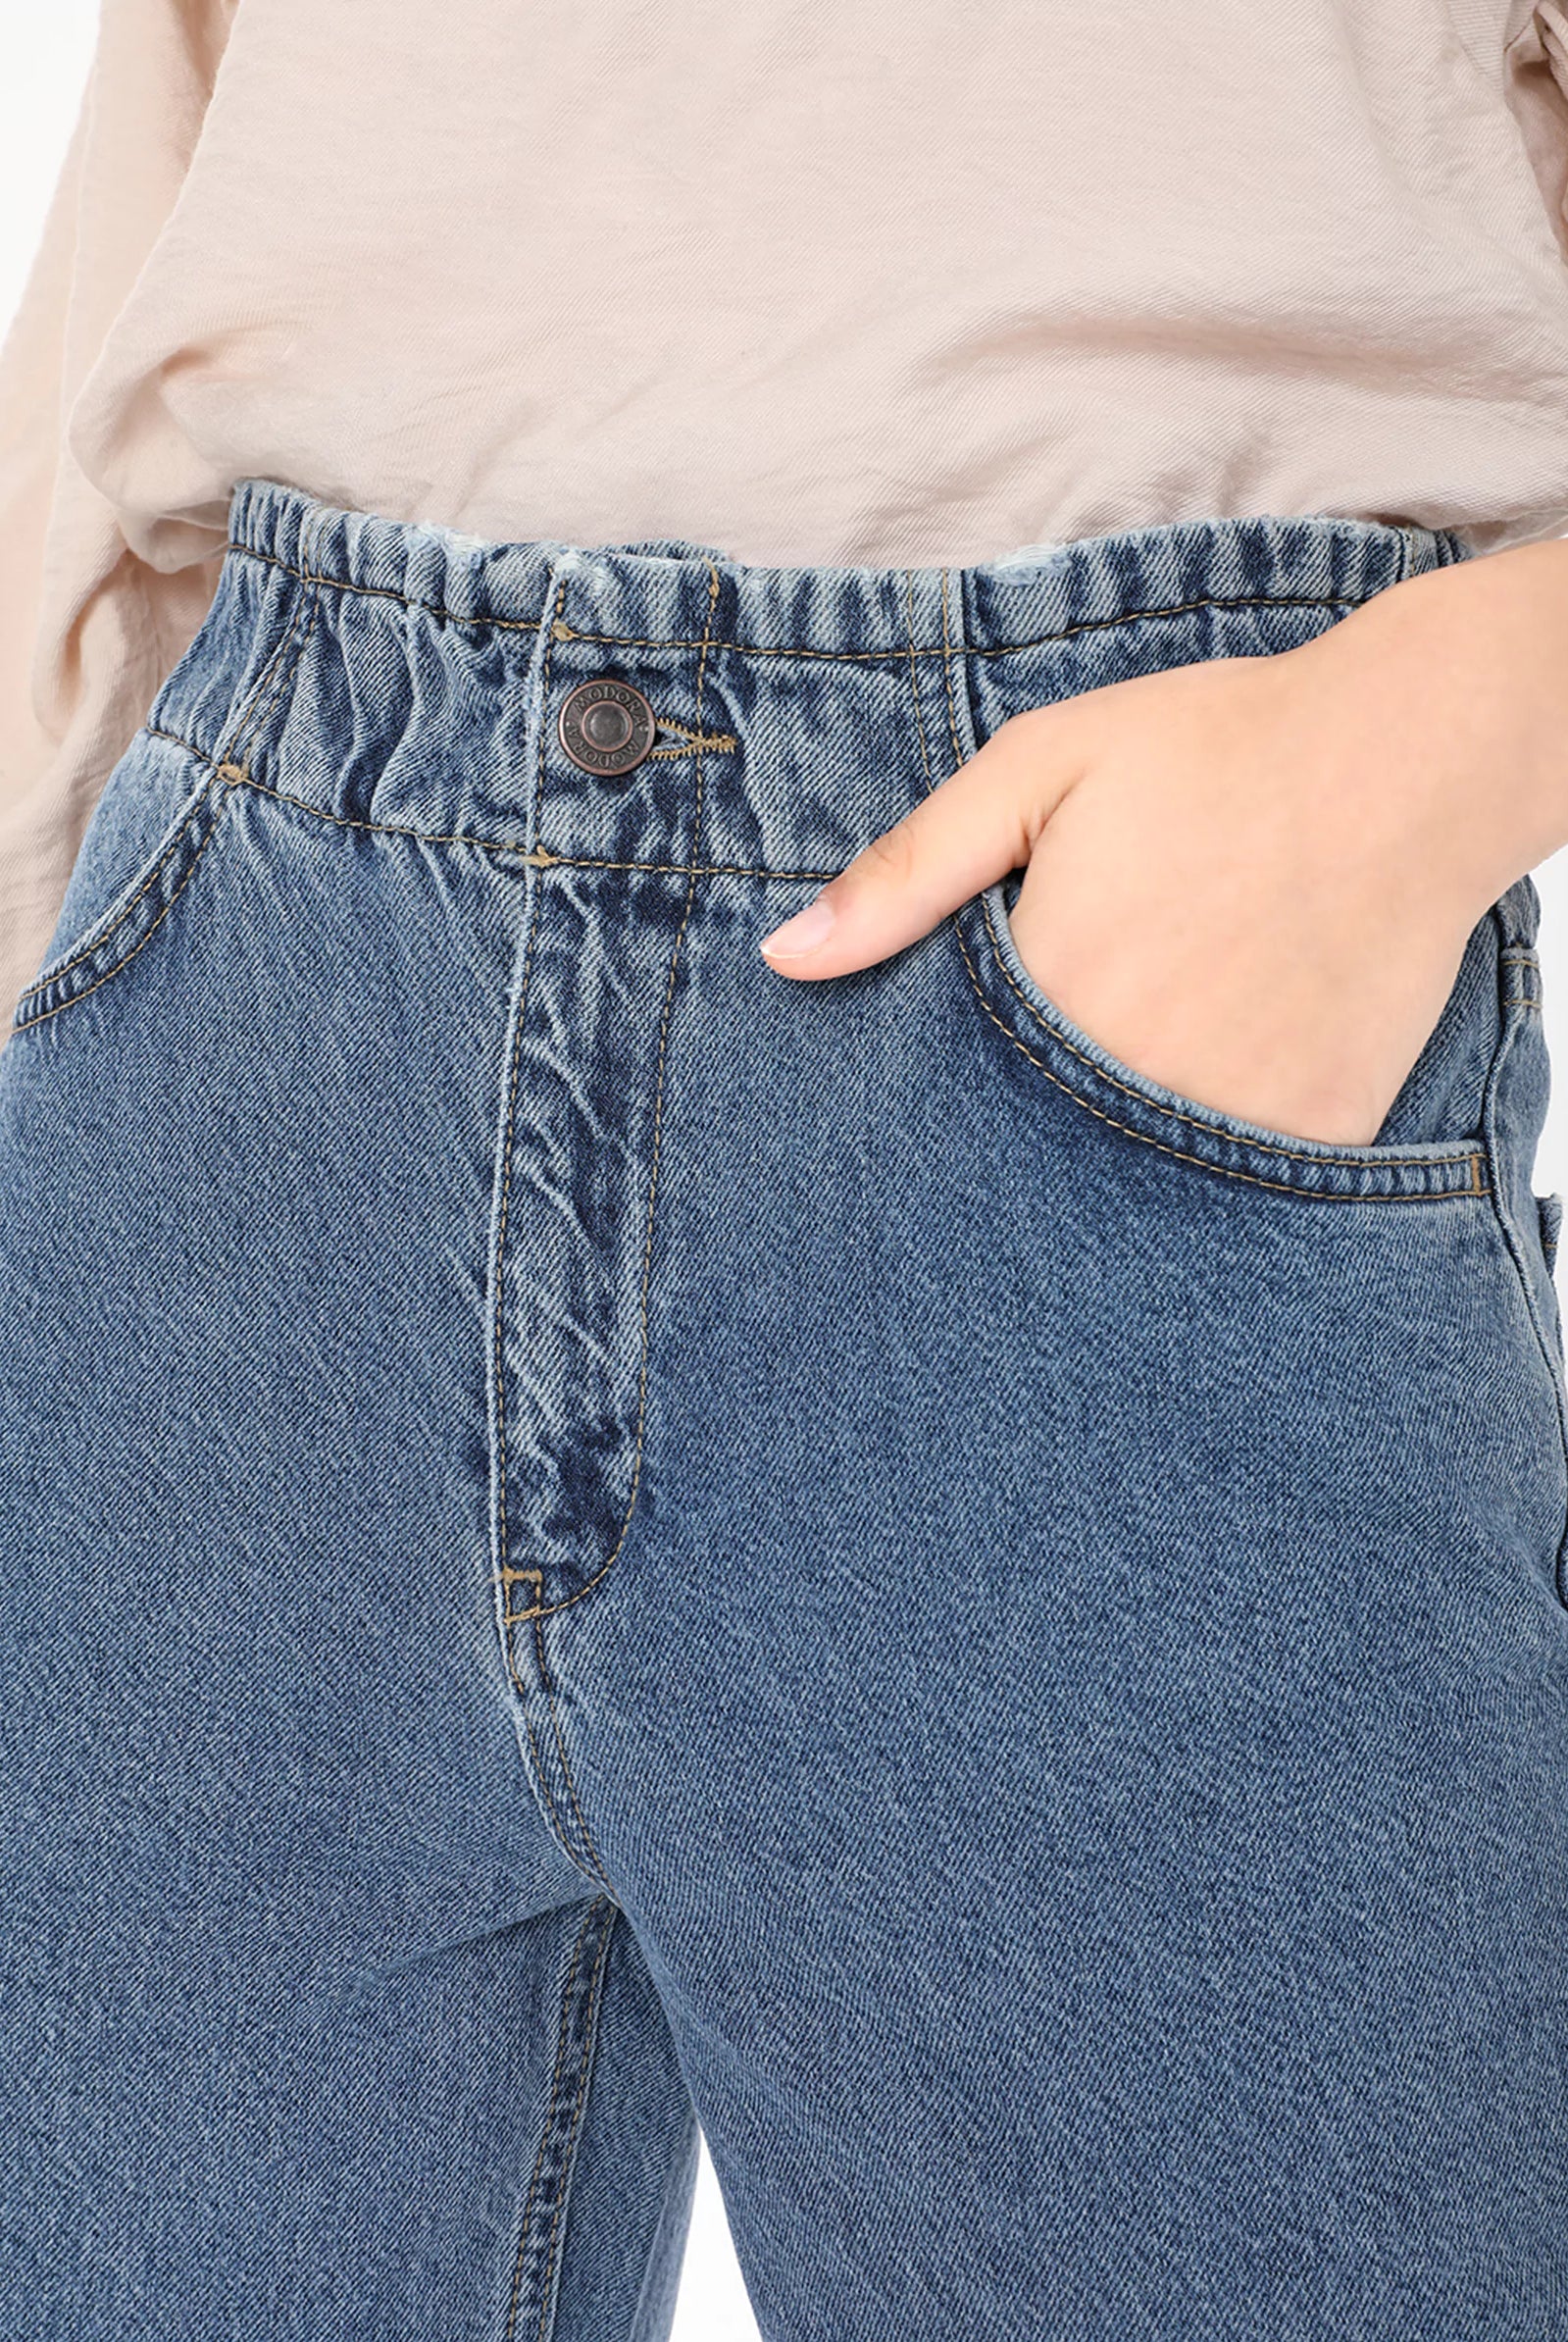 hem jeans for women